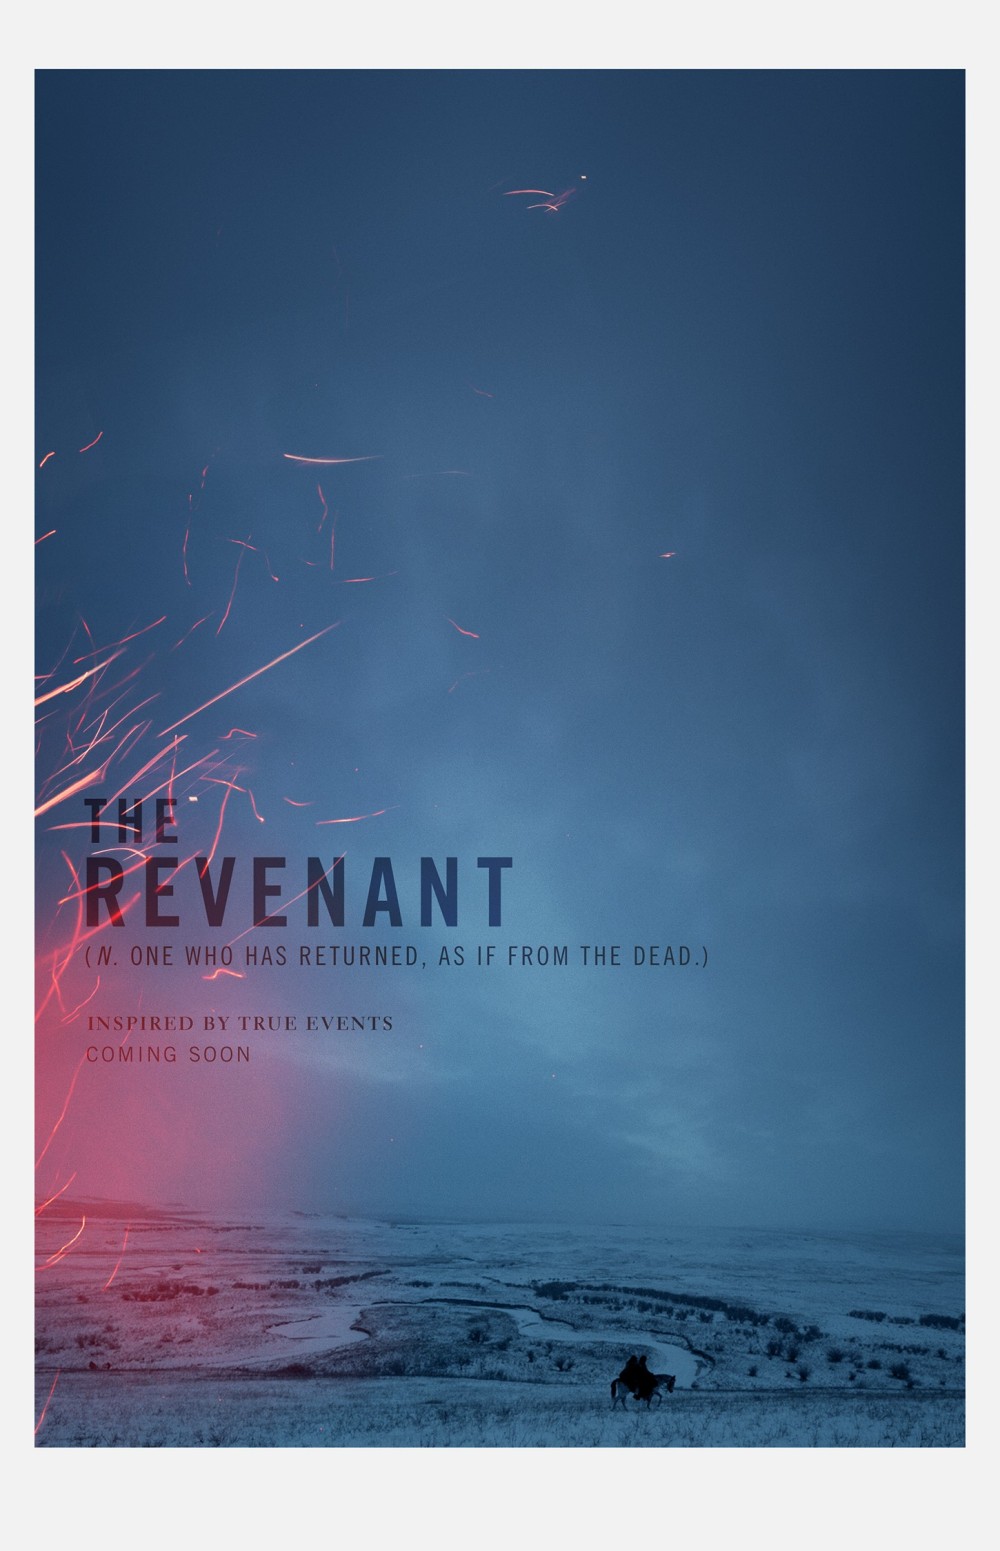 The Revenant Poster